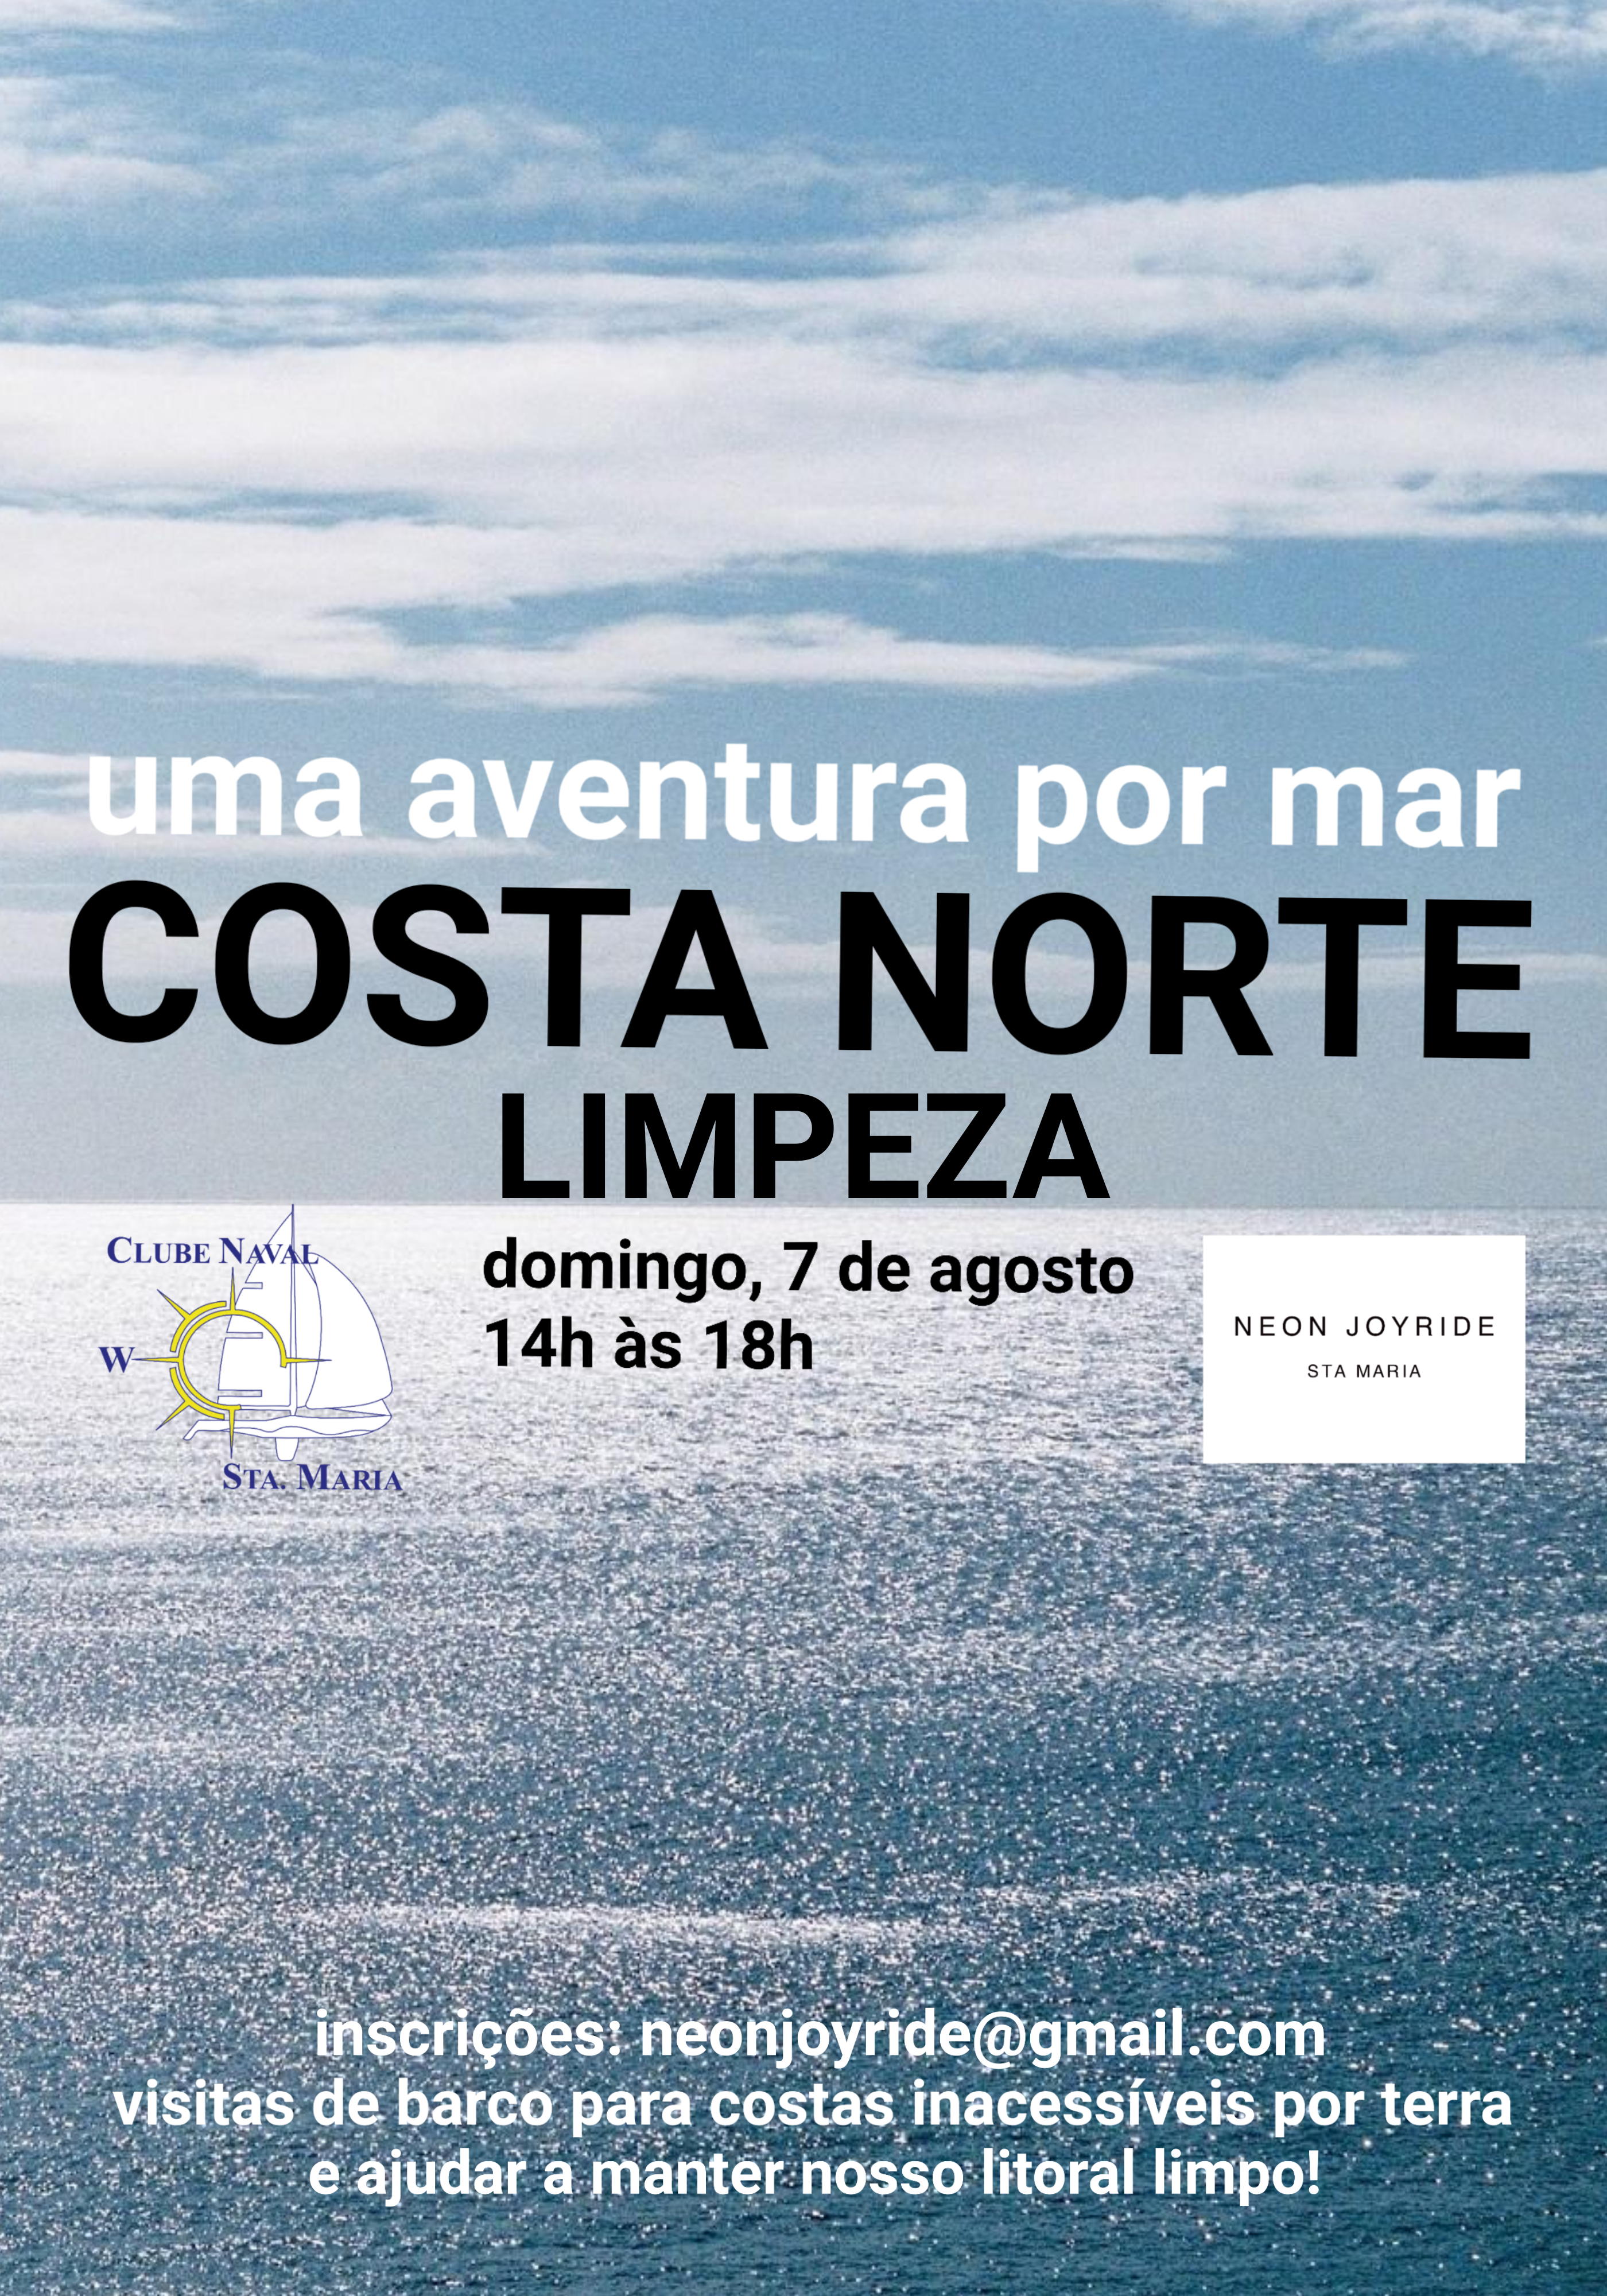 COSTA NORTE Limpeza by Neon Joyride, Santa Maria Azores July 2022